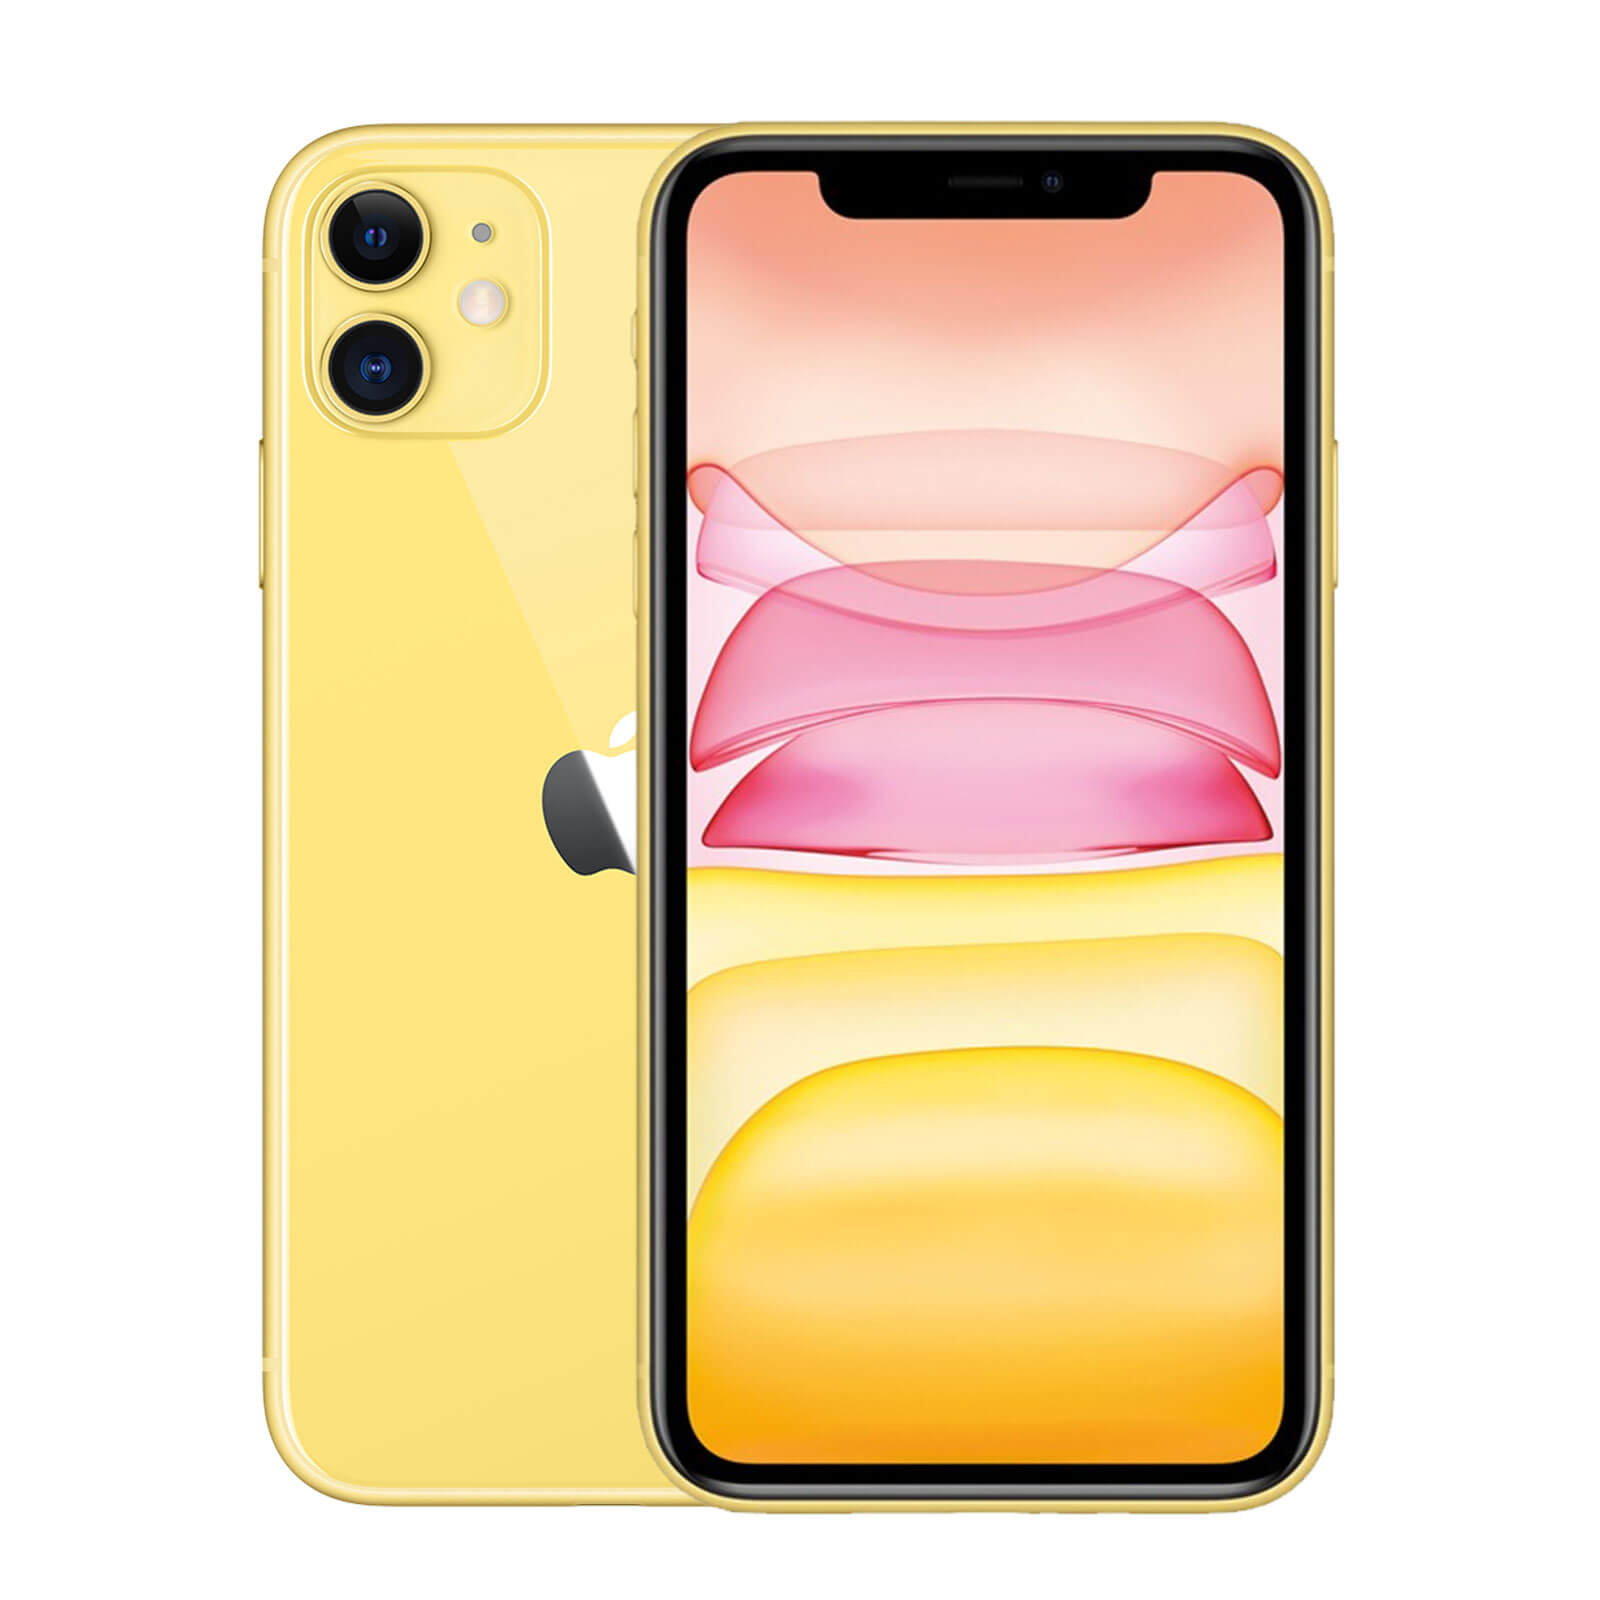 Apple iPhone 11 128GB Gelb Gut - Ohne Vertrag